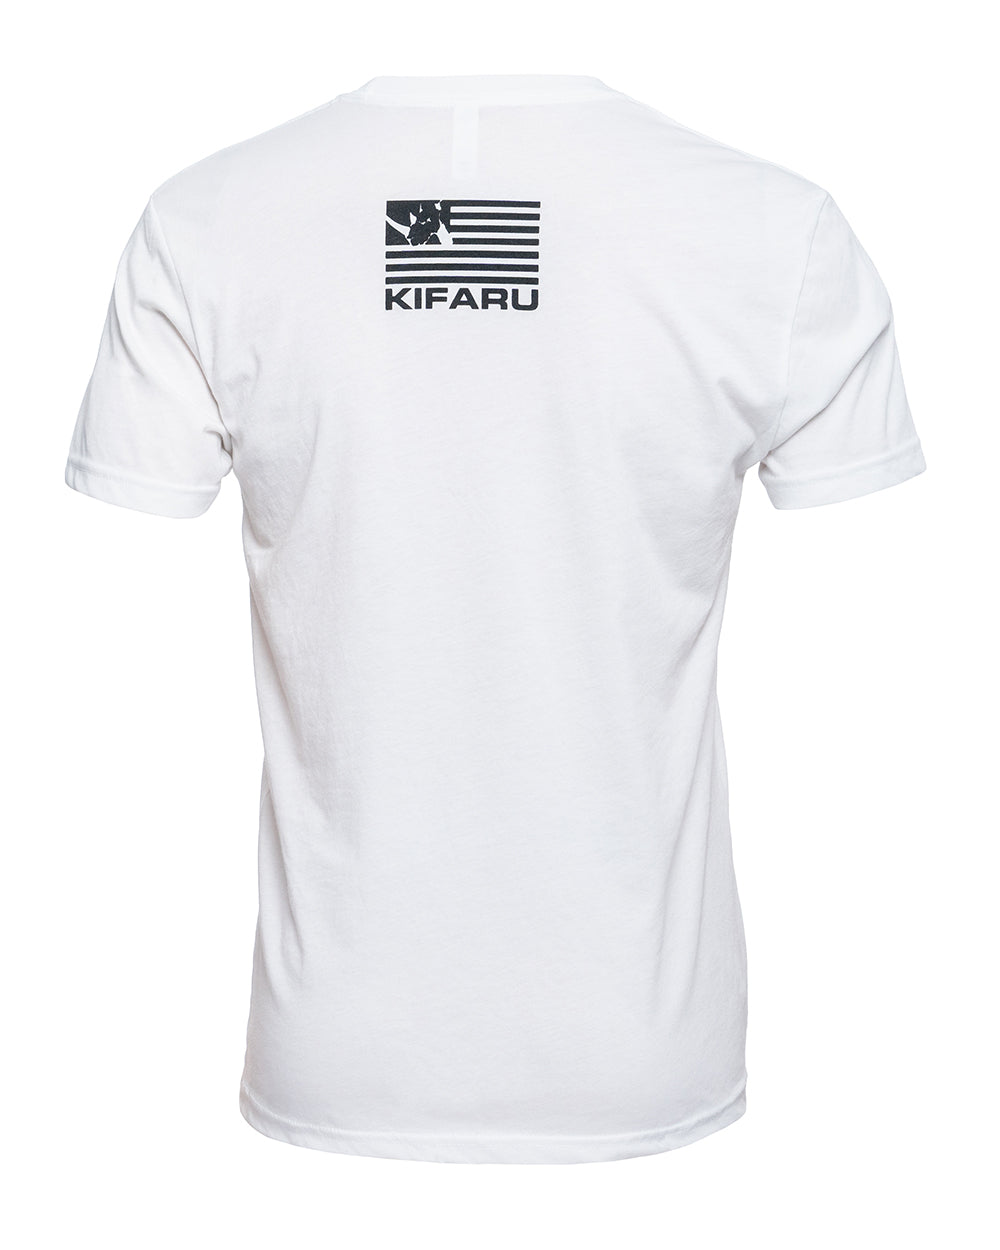 Kifaru Rhino Shirt